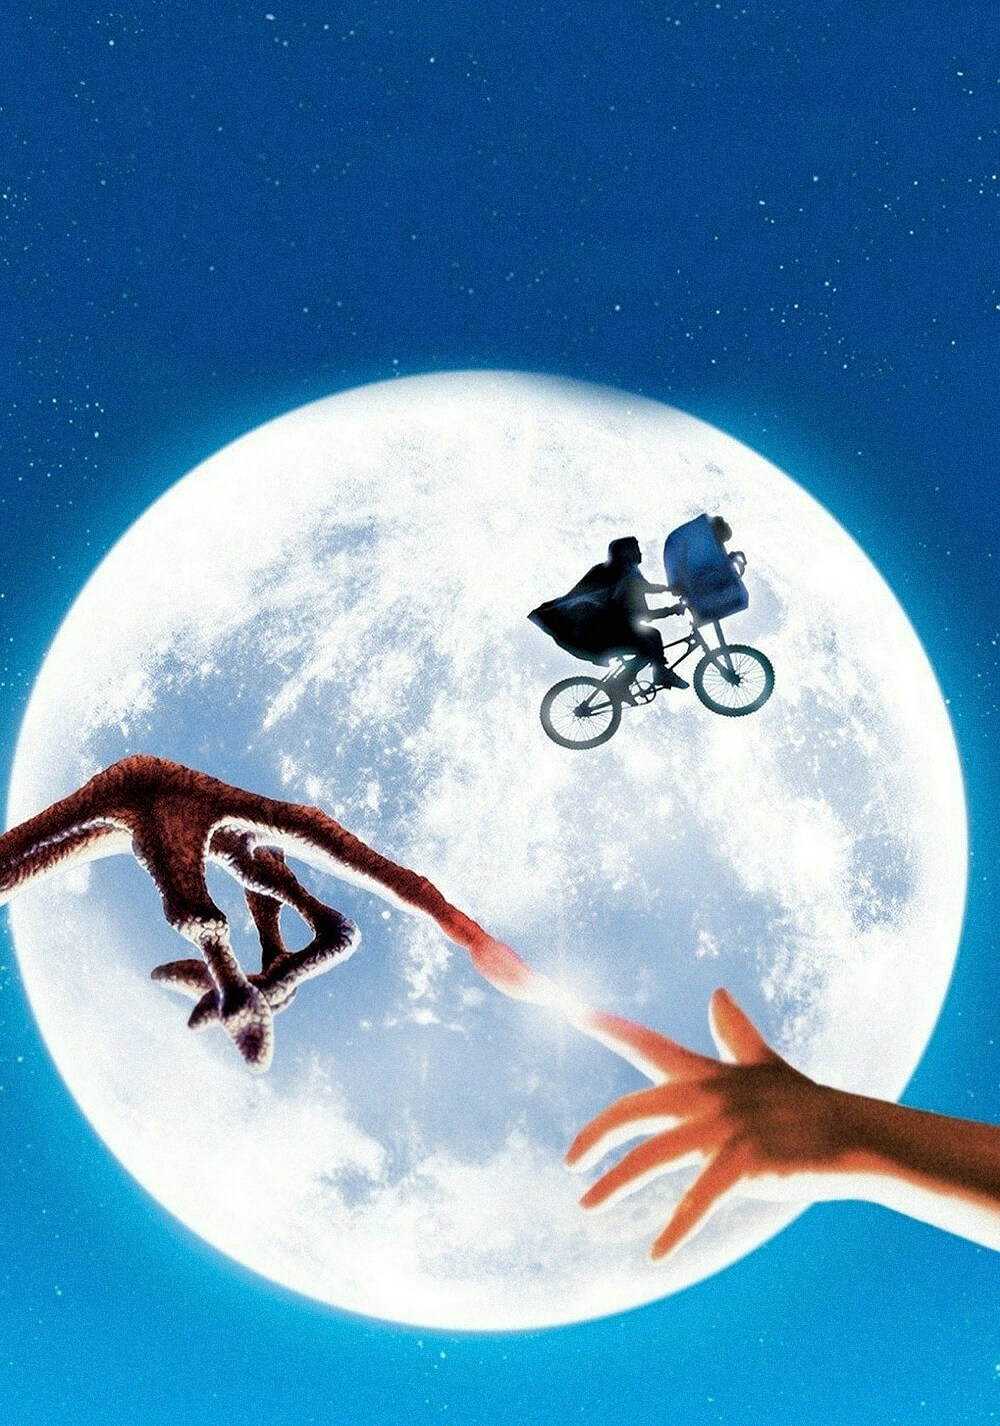 ئی.تی. موجود فرازمینی (E.T. the Extra-Terrestrial)